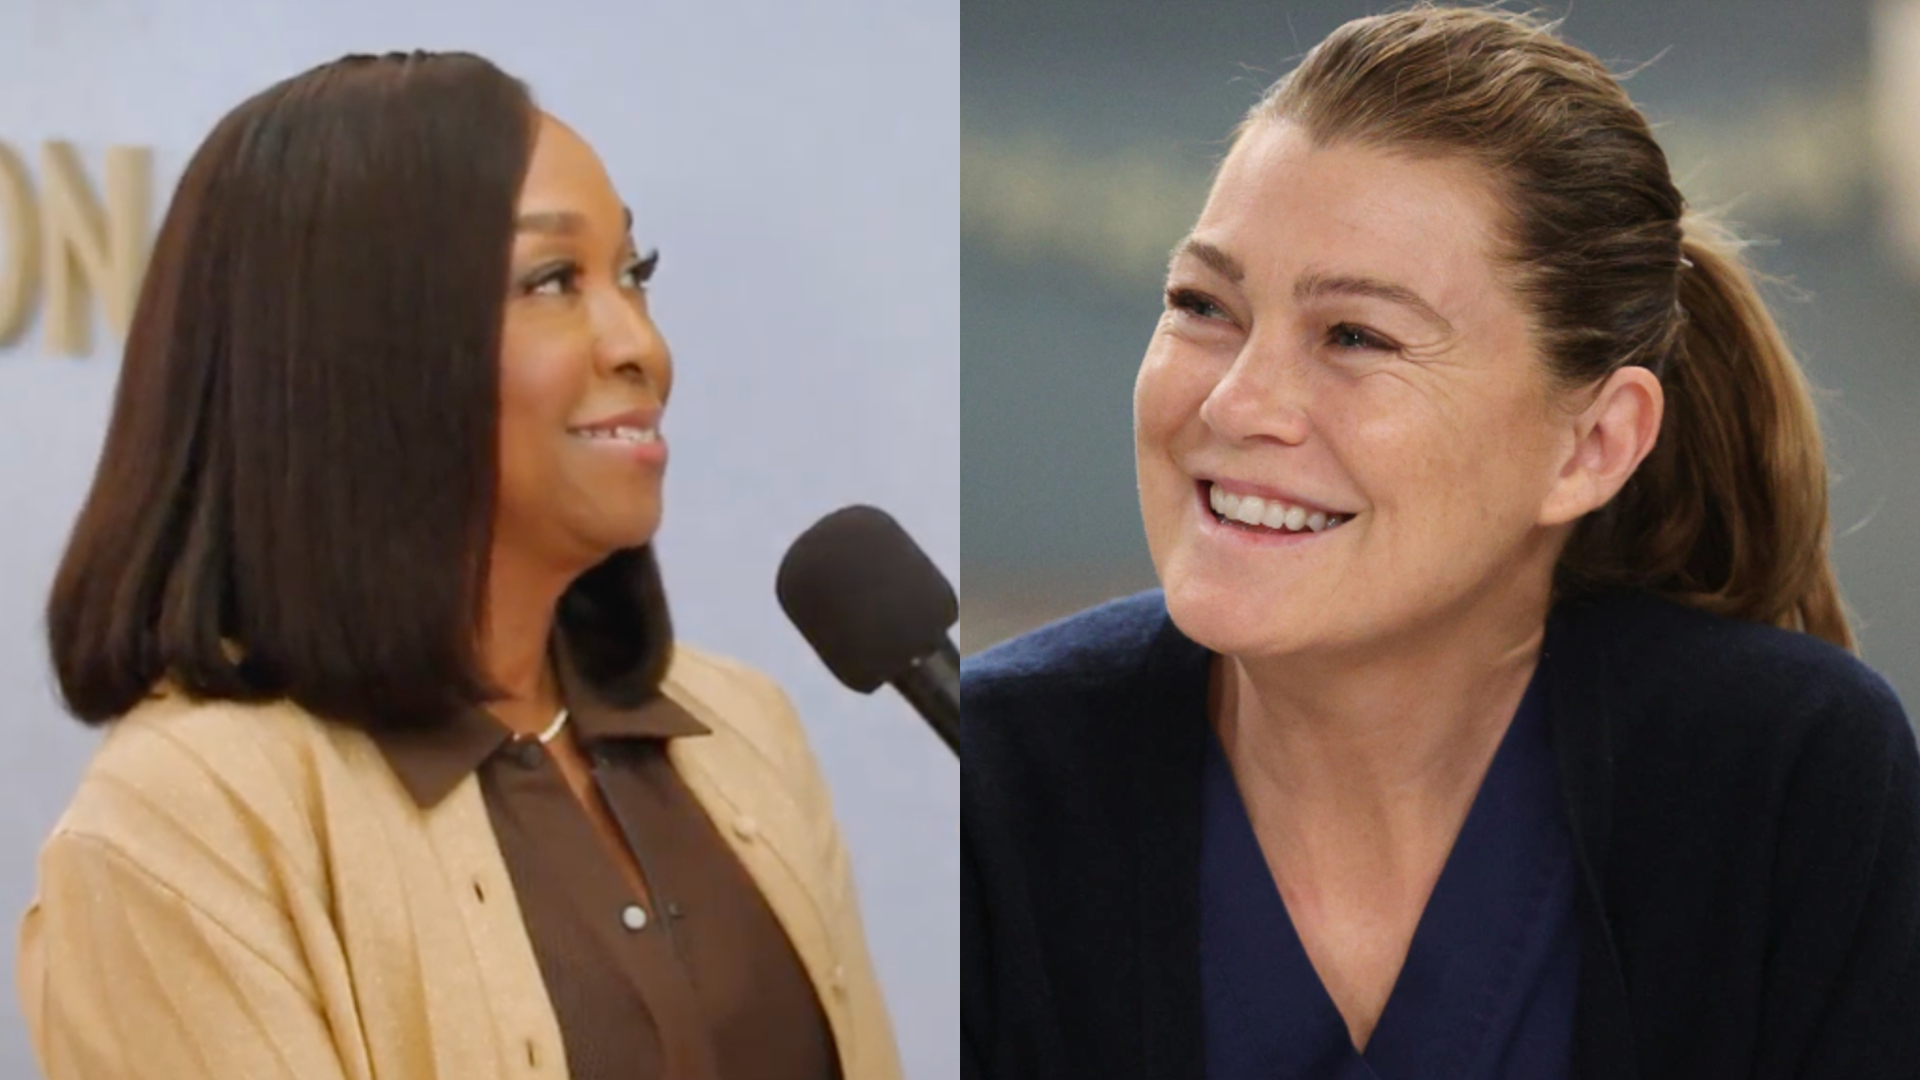 EXCLUSIVO: Shonda Rhimes reage ao apelido “Shondanás” e surpreende ao falar de final de “Grey’s Anatomy”; assista